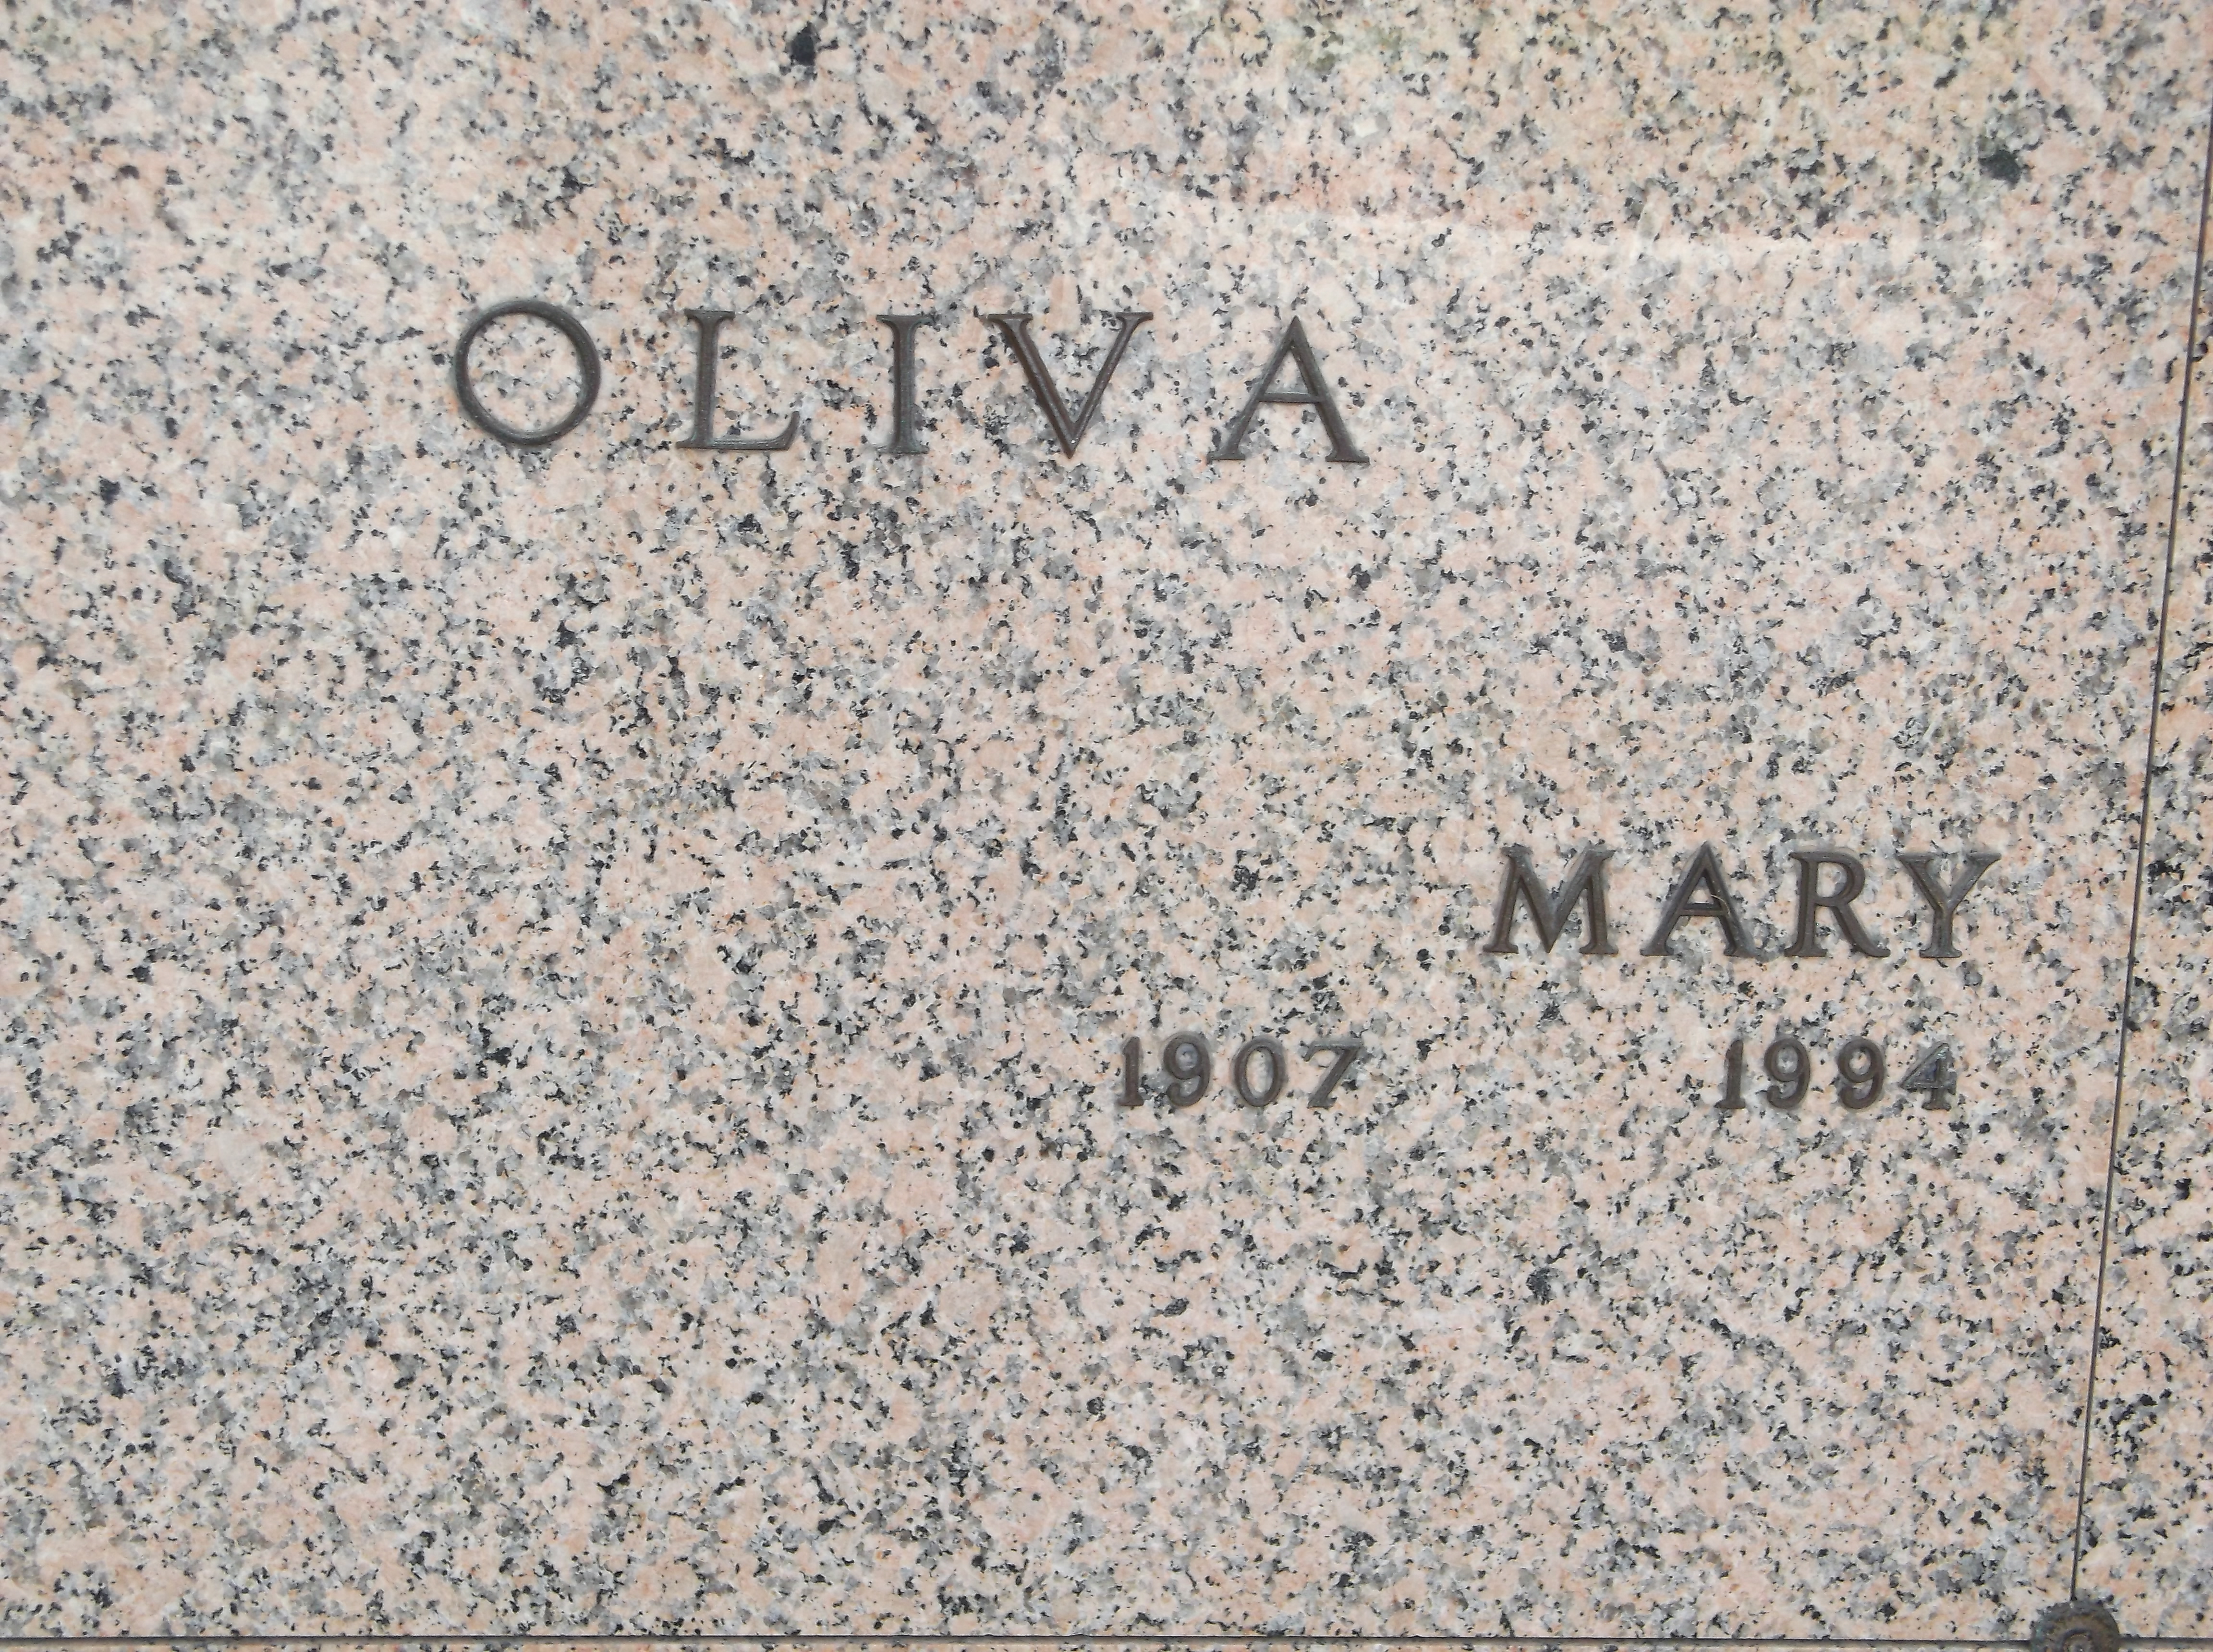 Mary Oliva